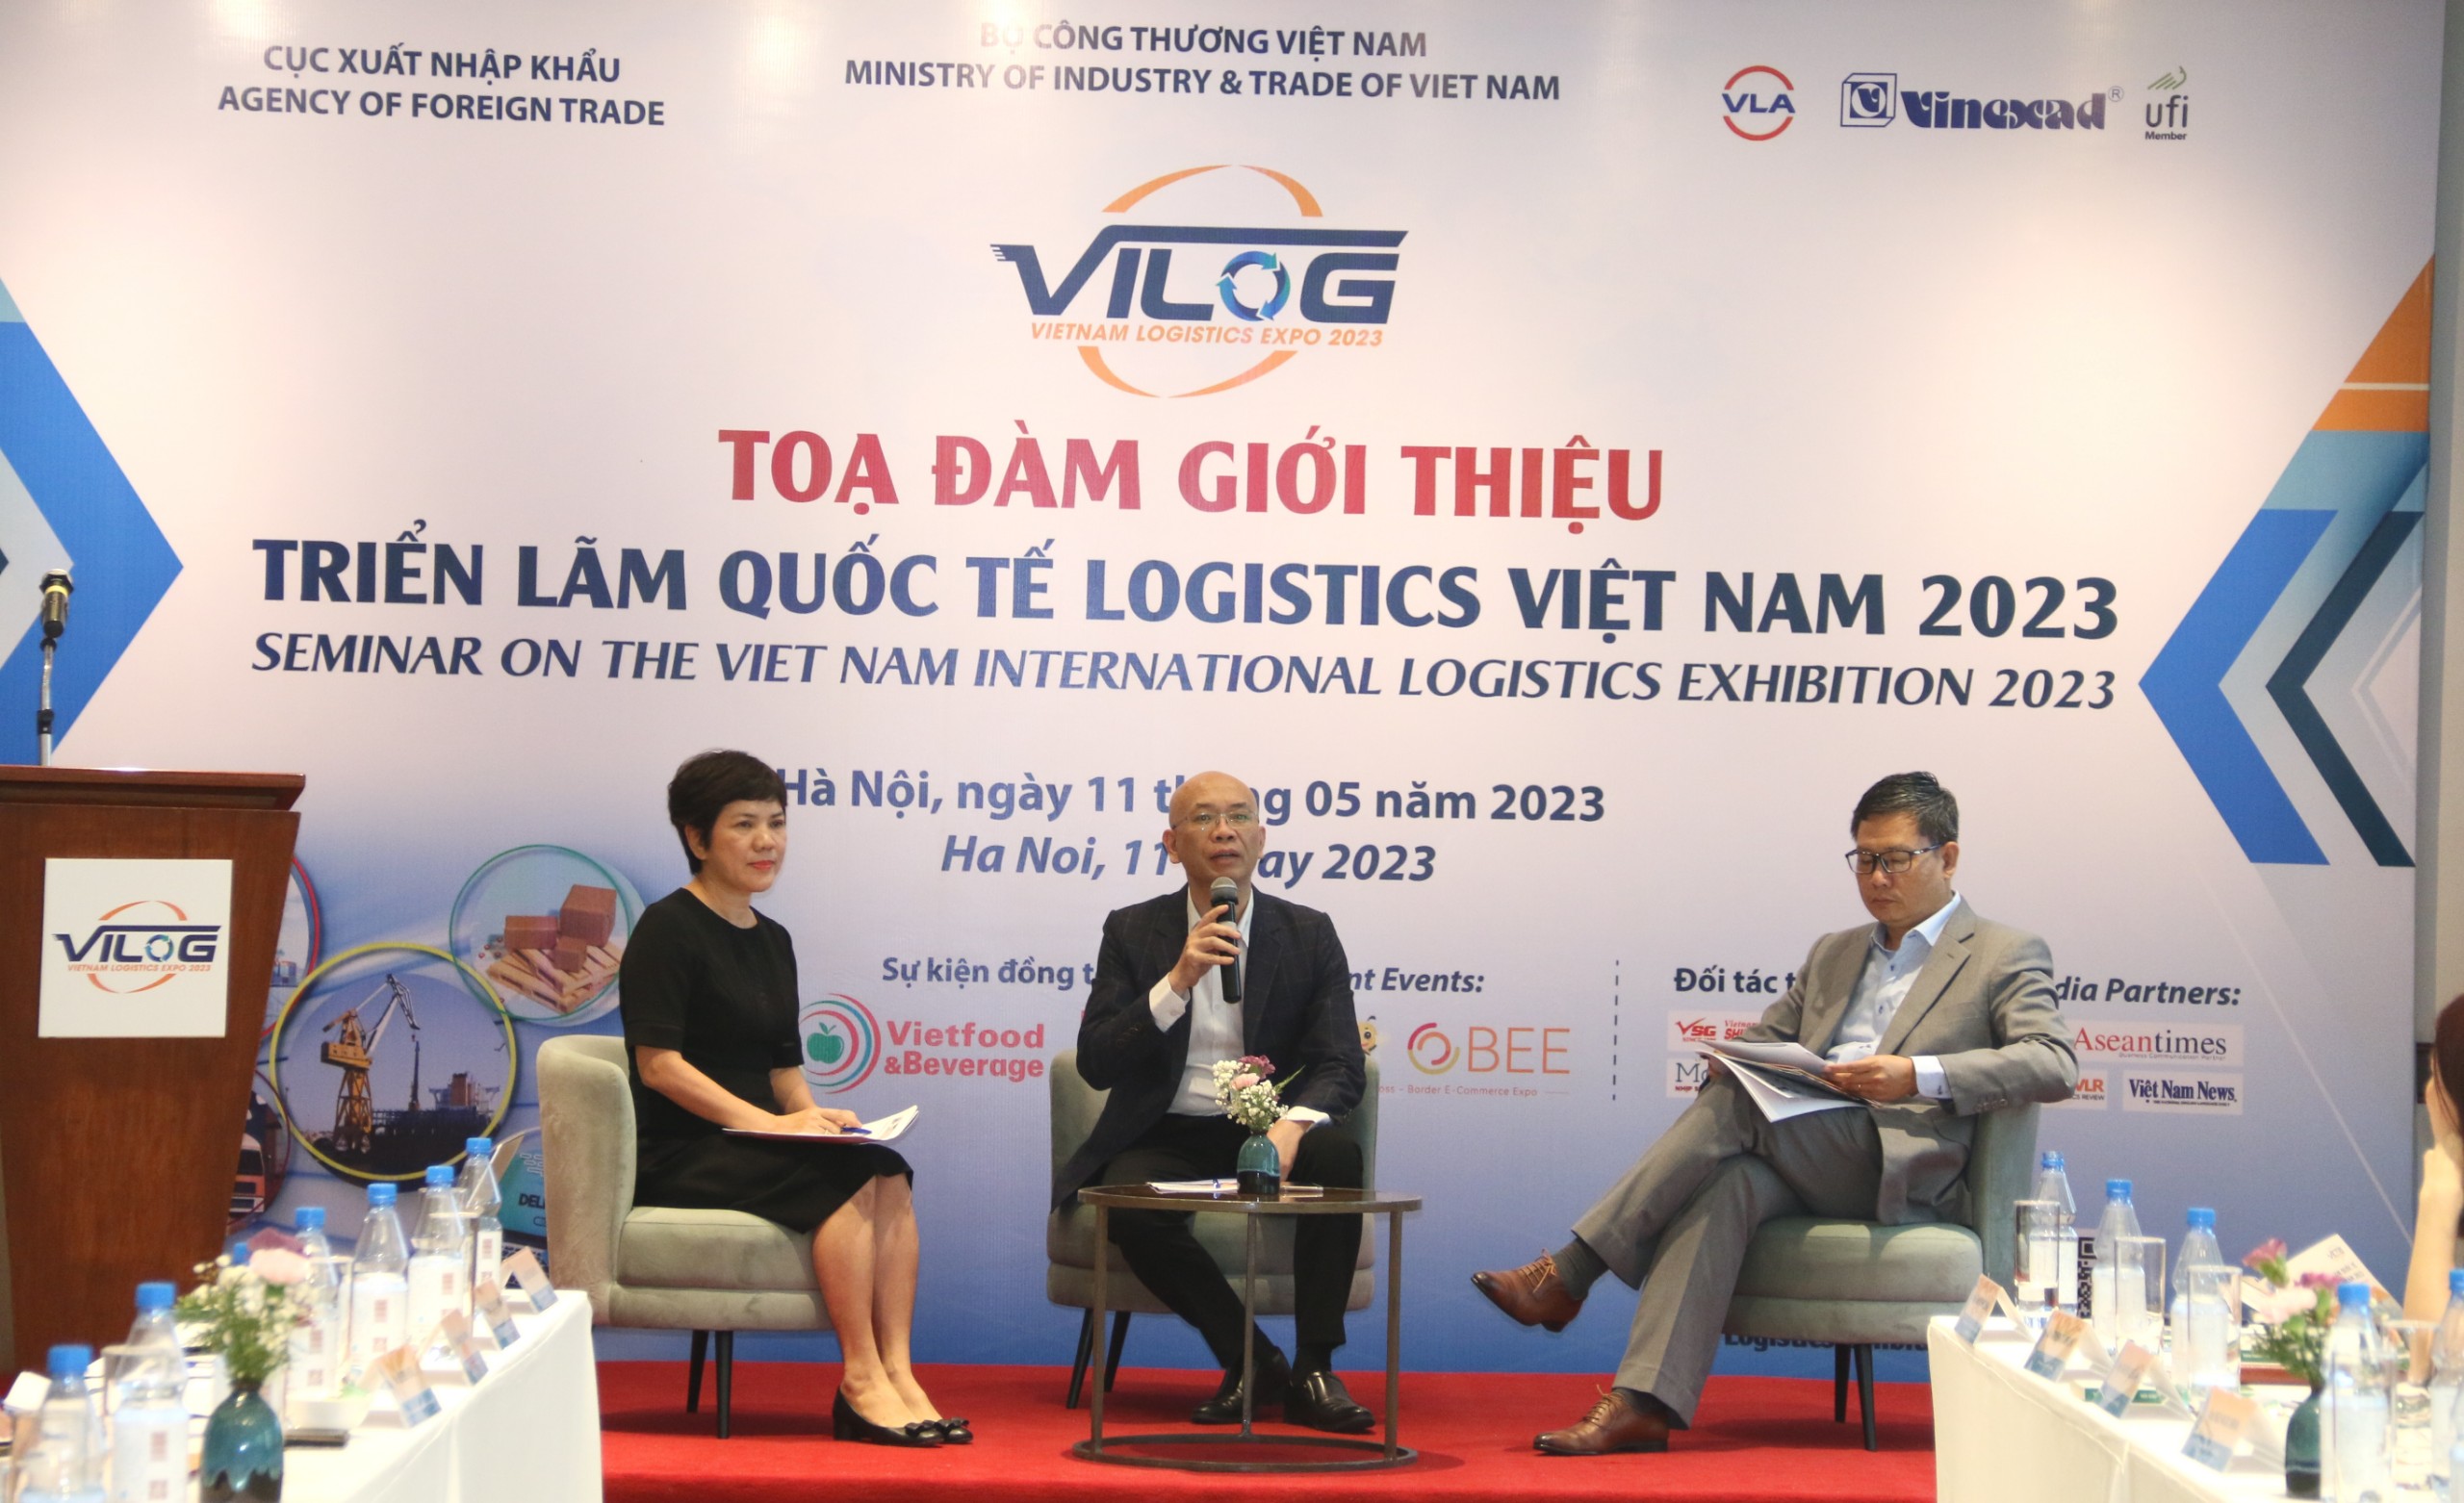 Tại buổi Tọa đàm giới thiệu Triển lãm quốc tế Logistics Việt Nam 2023 